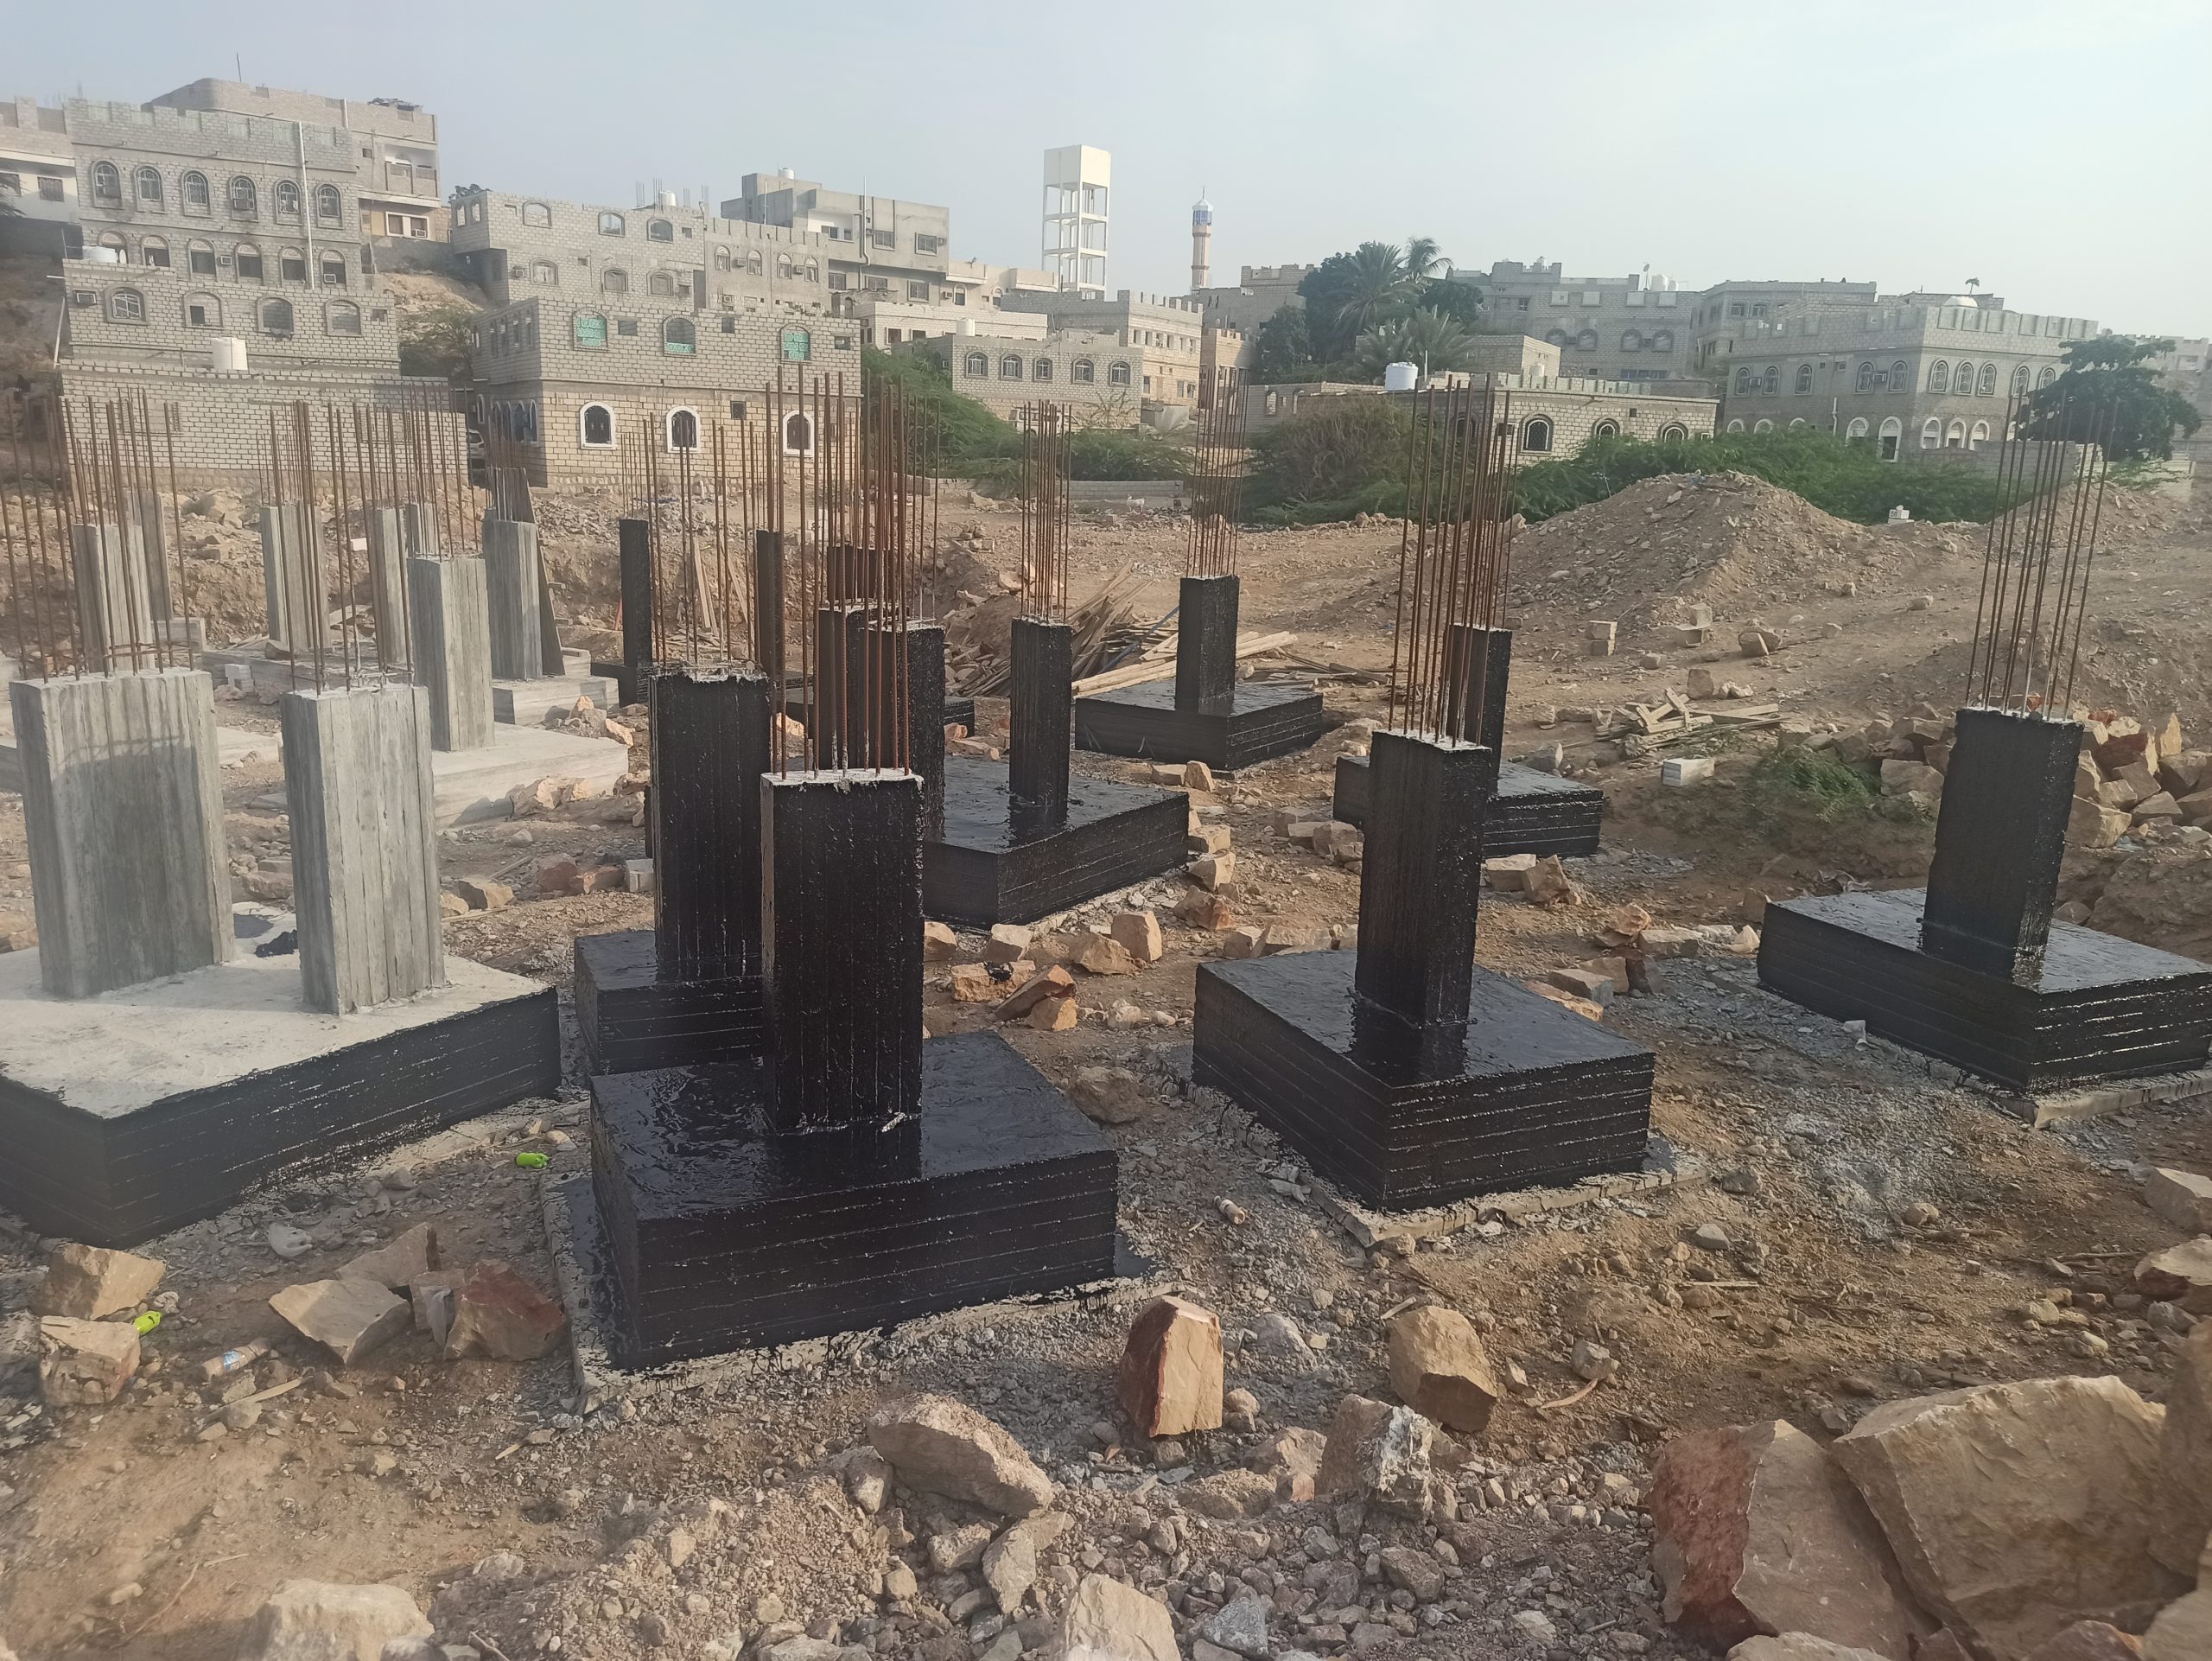 مشروع مسجد بابدر || مرحلة صبة وعزل الرقاب وبناء الكرسي الحجري واعمال بناء الخزان